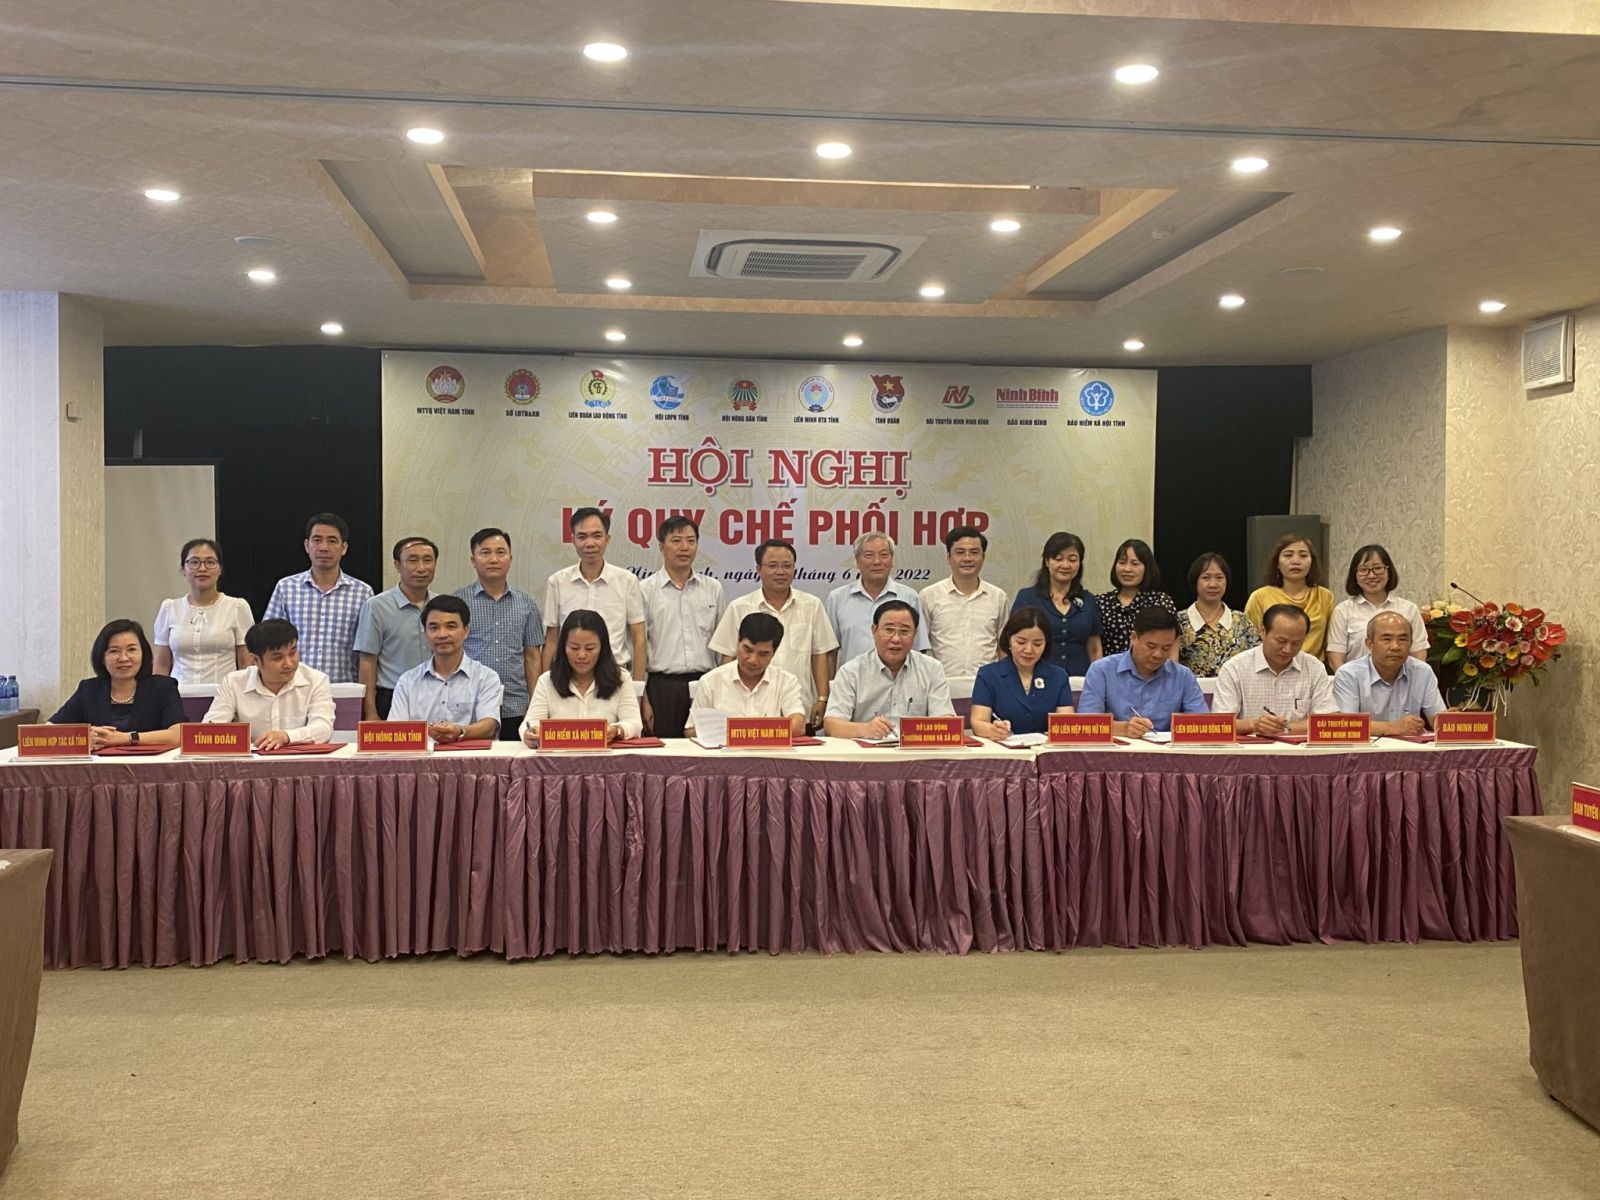 Hội nghị ký kết Quy chế phối hợp giữa cơ quan Bảo hiểm xã hội tỉnh với các cơ quan, đơn vị trên địa bàn tỉnh Ninh Bình năm 2022